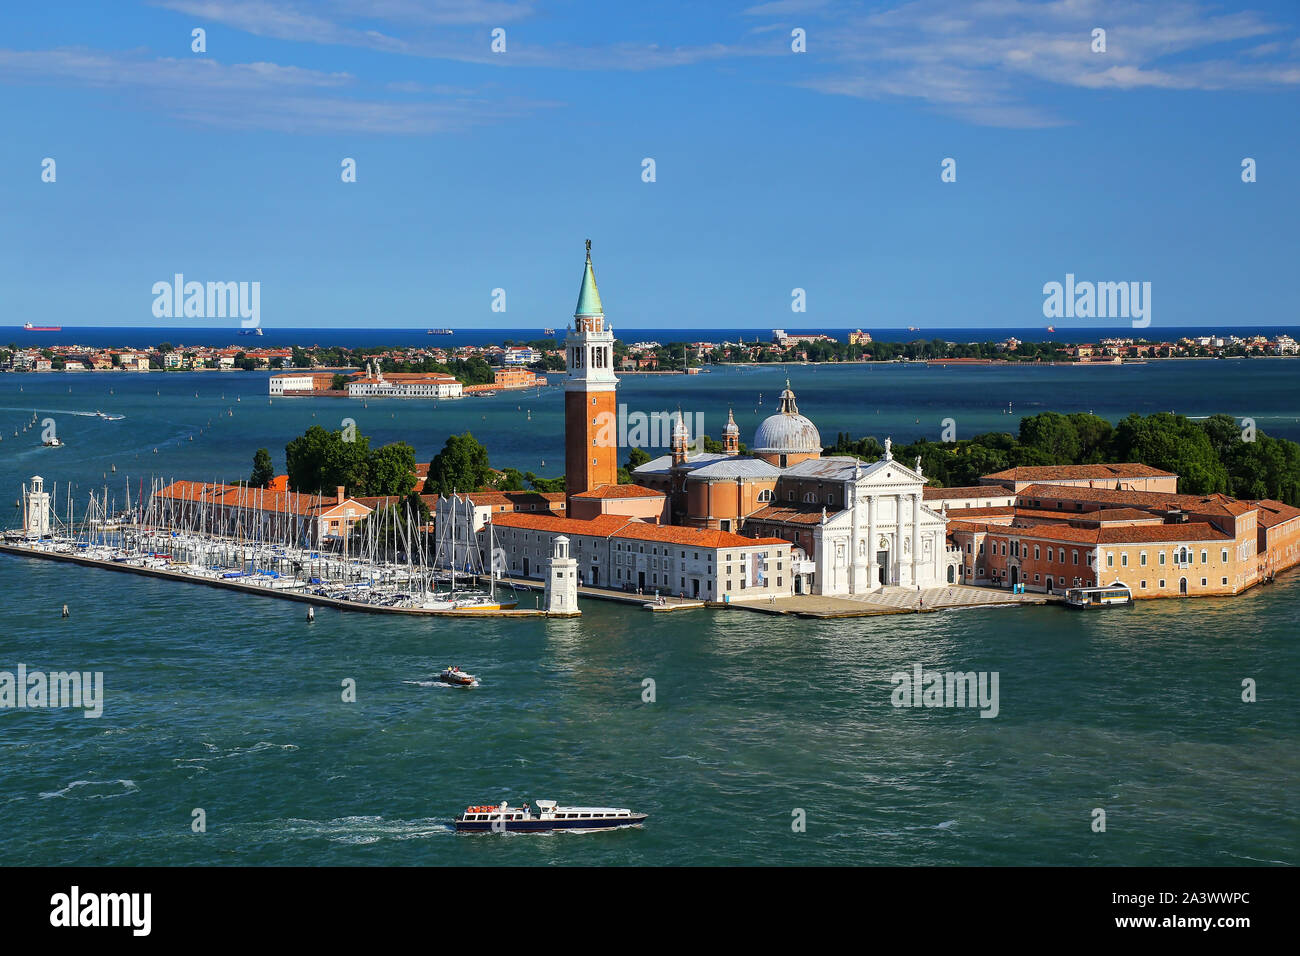 Vue aérienne de l'île de San Giorgio Maggiore à Venise, Italie. Venise est situé dans un groupe de 117 petites îles qui sont séparés par des canaux et de la l Banque D'Images